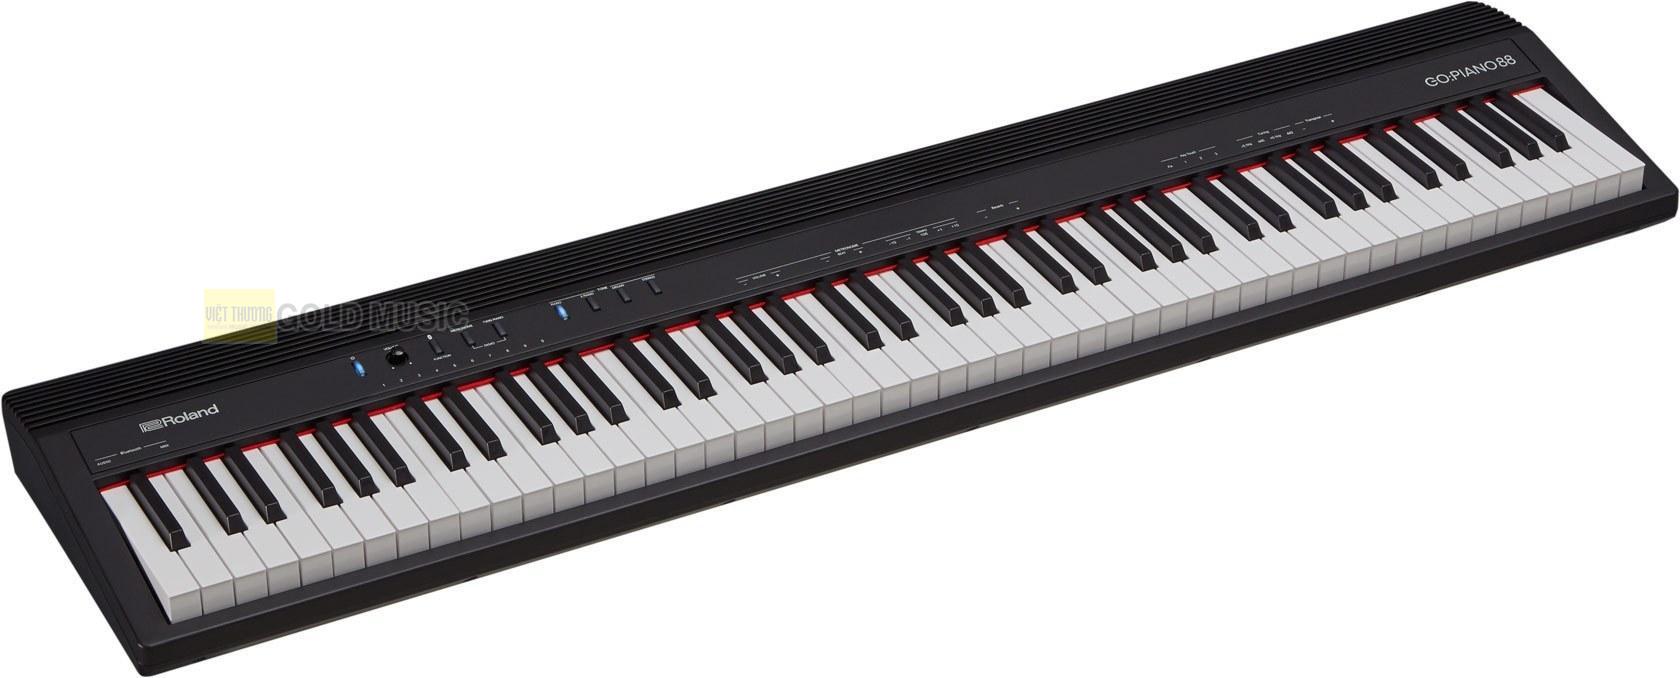 Đàn Piano Điện Roland GO-88P - được sản xuất bởi Roland - Thiết kế nhỏ gọn